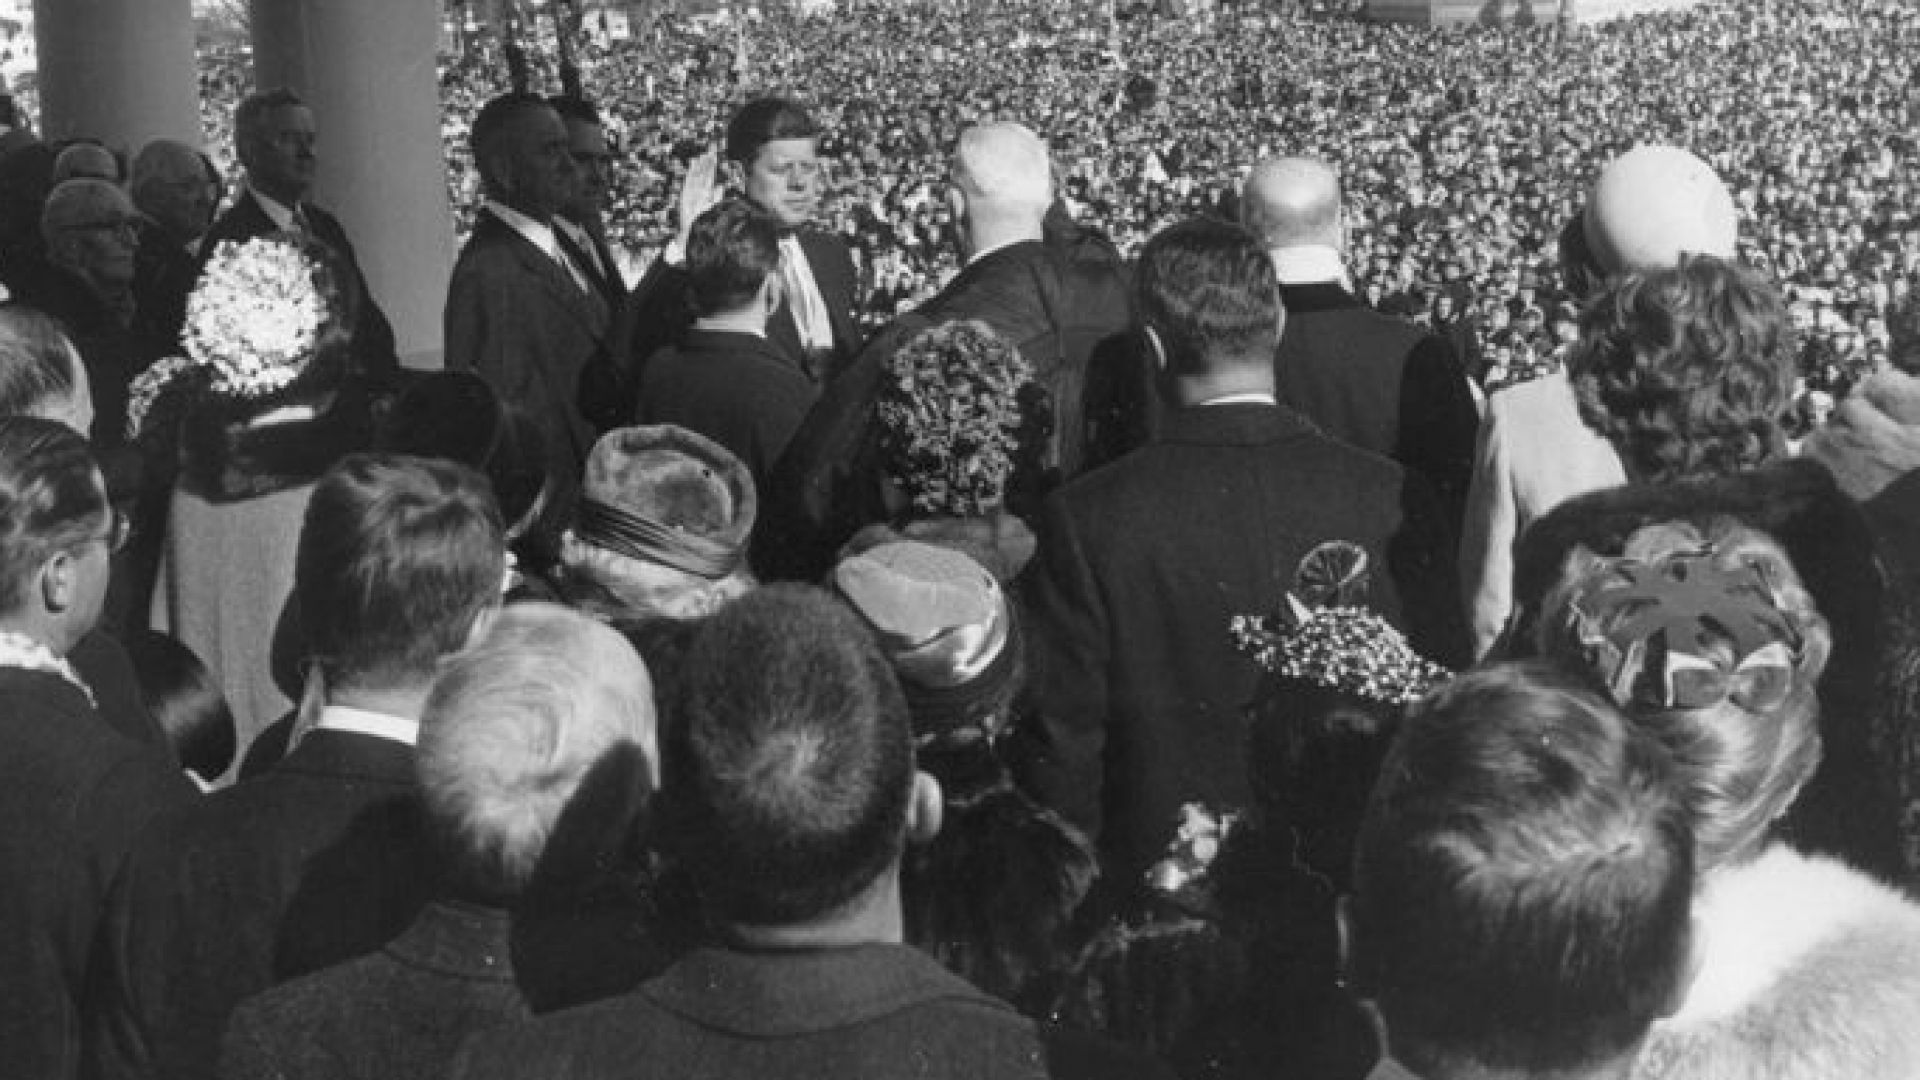 Обединена Америка с любимец за президент: Встъпването на Кенеди и паметната му реч